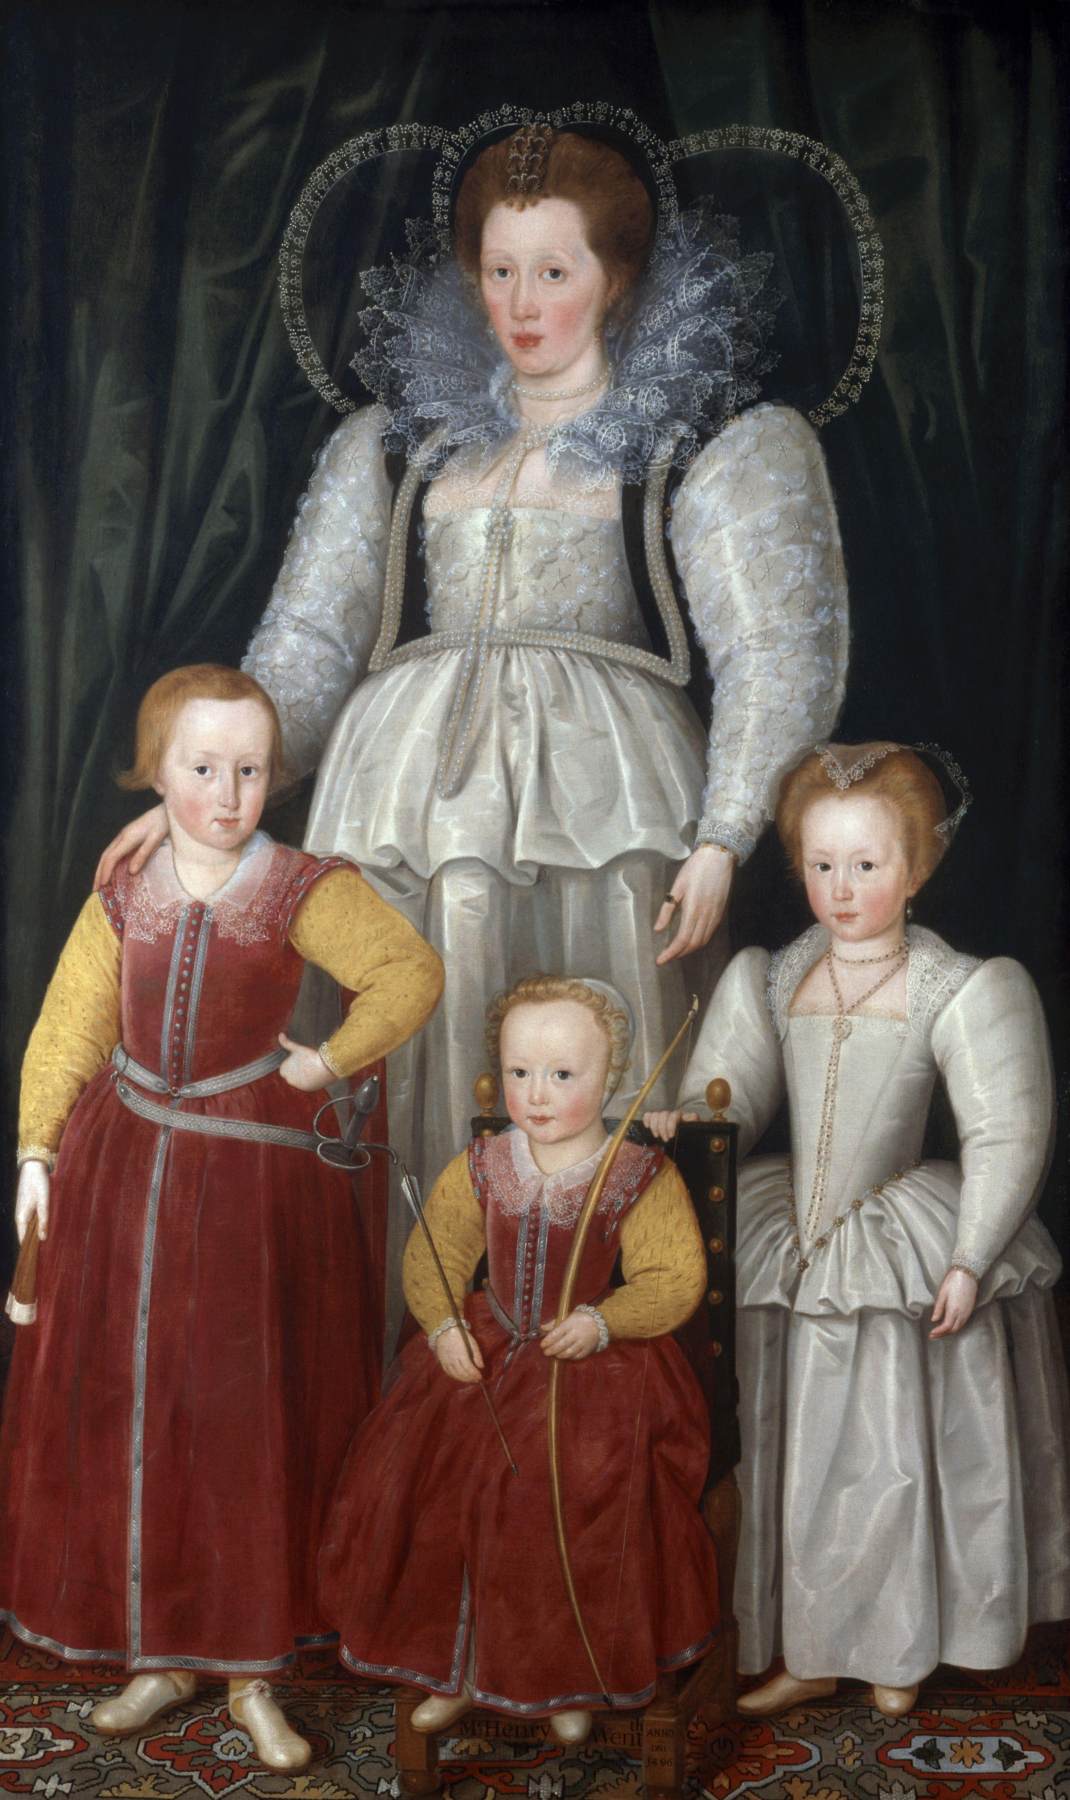 Ana, Lady Pope med sine børn